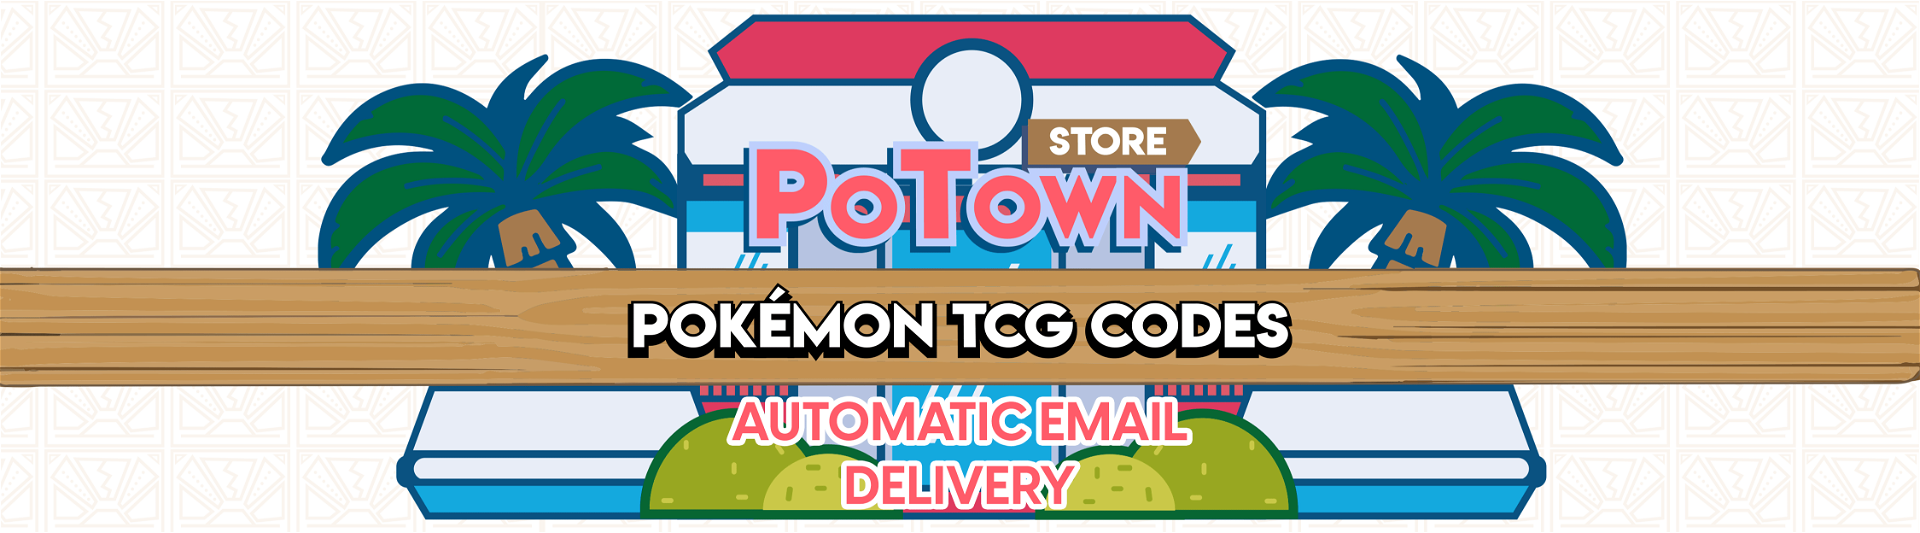 Pokemon Card x2 BLASTOISE GX PREMIUM COLLECTION SM189 Online Codes NEW! 